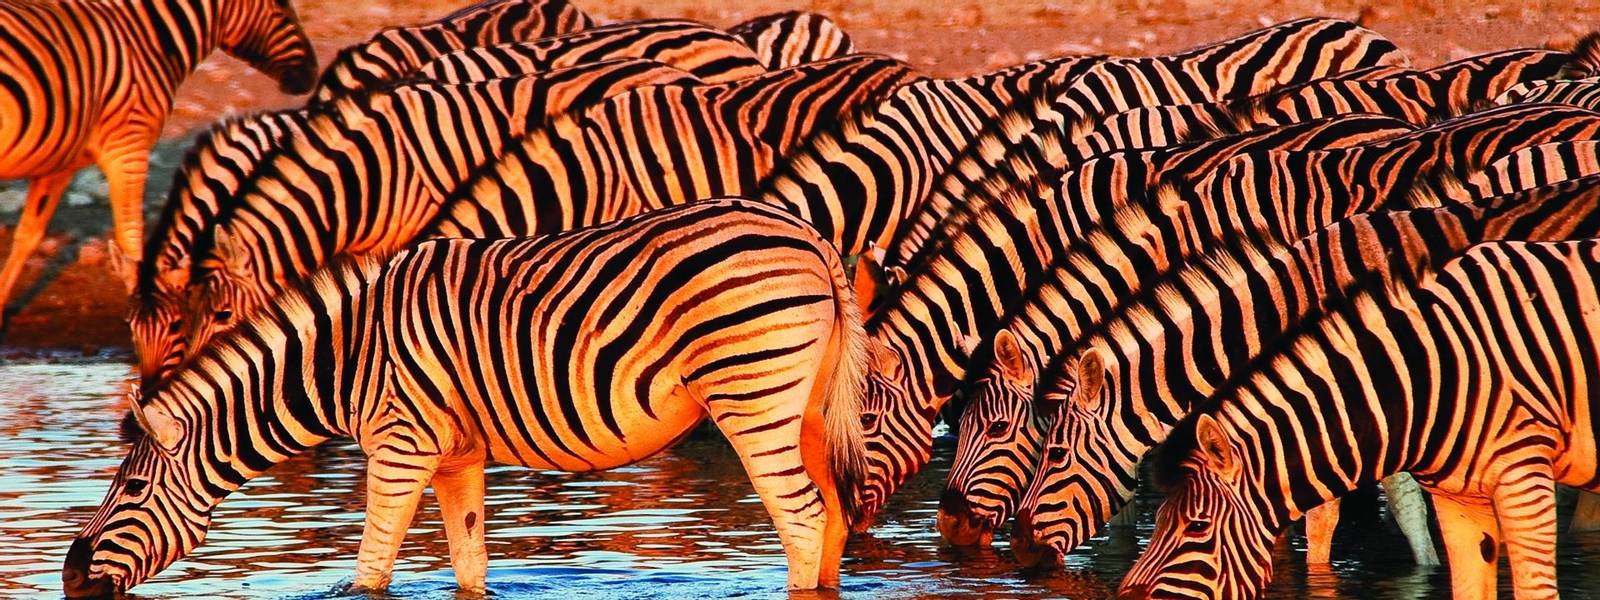 Zebras am Wasserloch im Etosha Nationalpark, Namibia